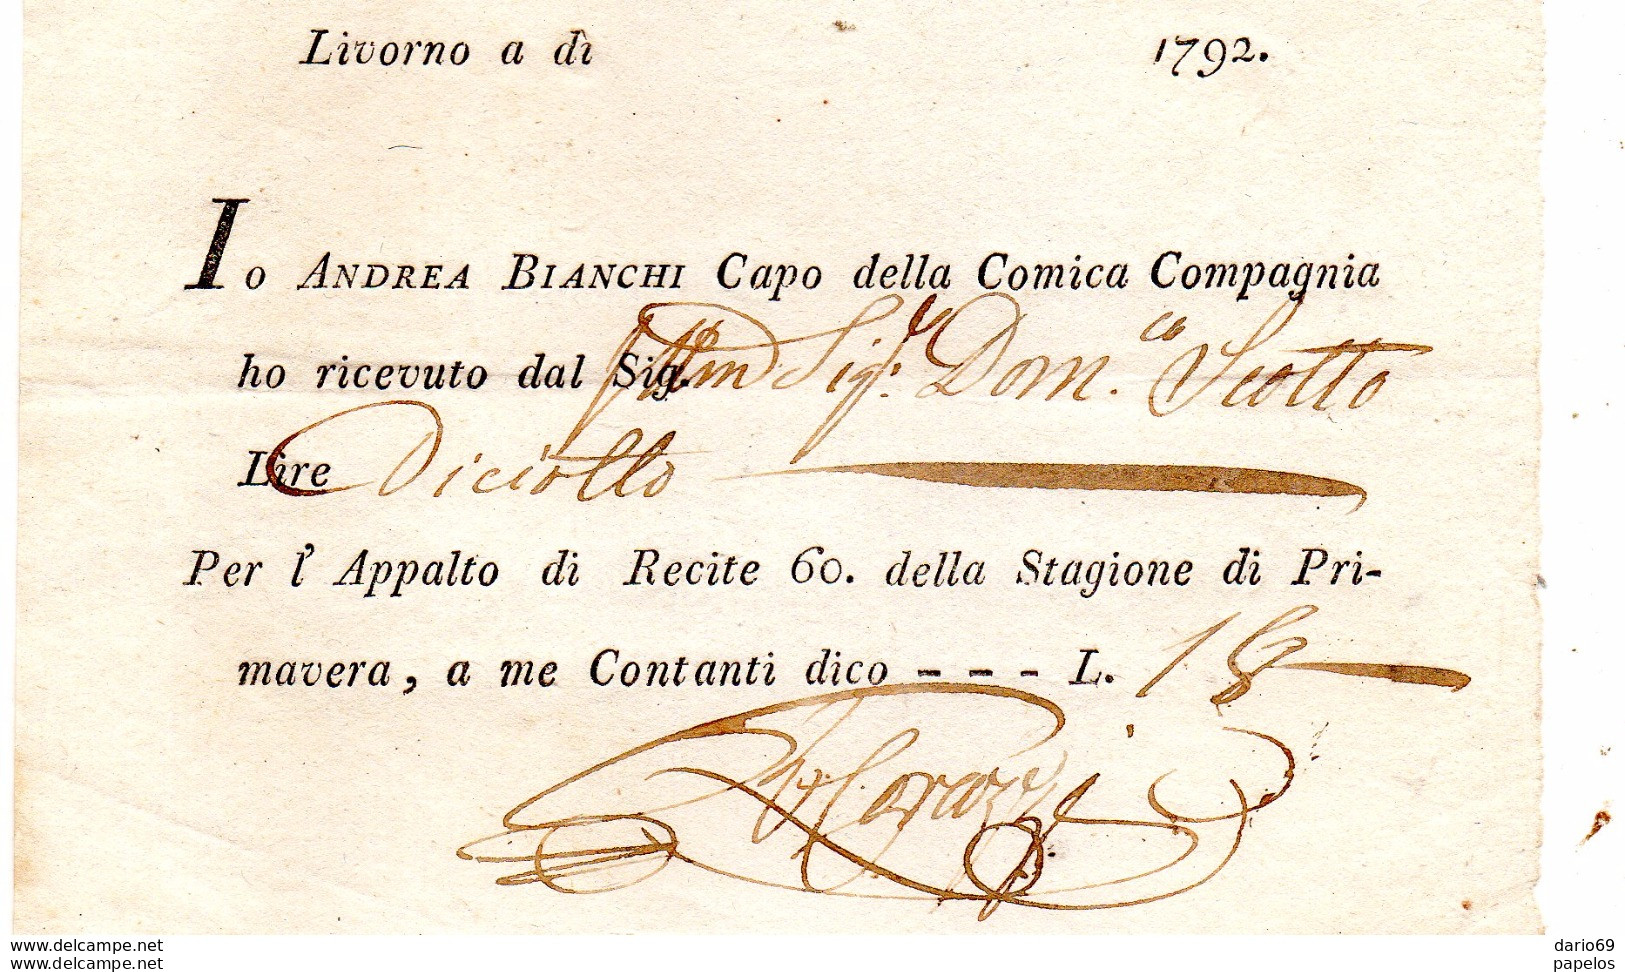 1792  LIVORNO RICEVUTA ANDREA BIANCHI CAPO DELLA COMICA COMPAGNIA - APPALTO TEATRALE - Italy